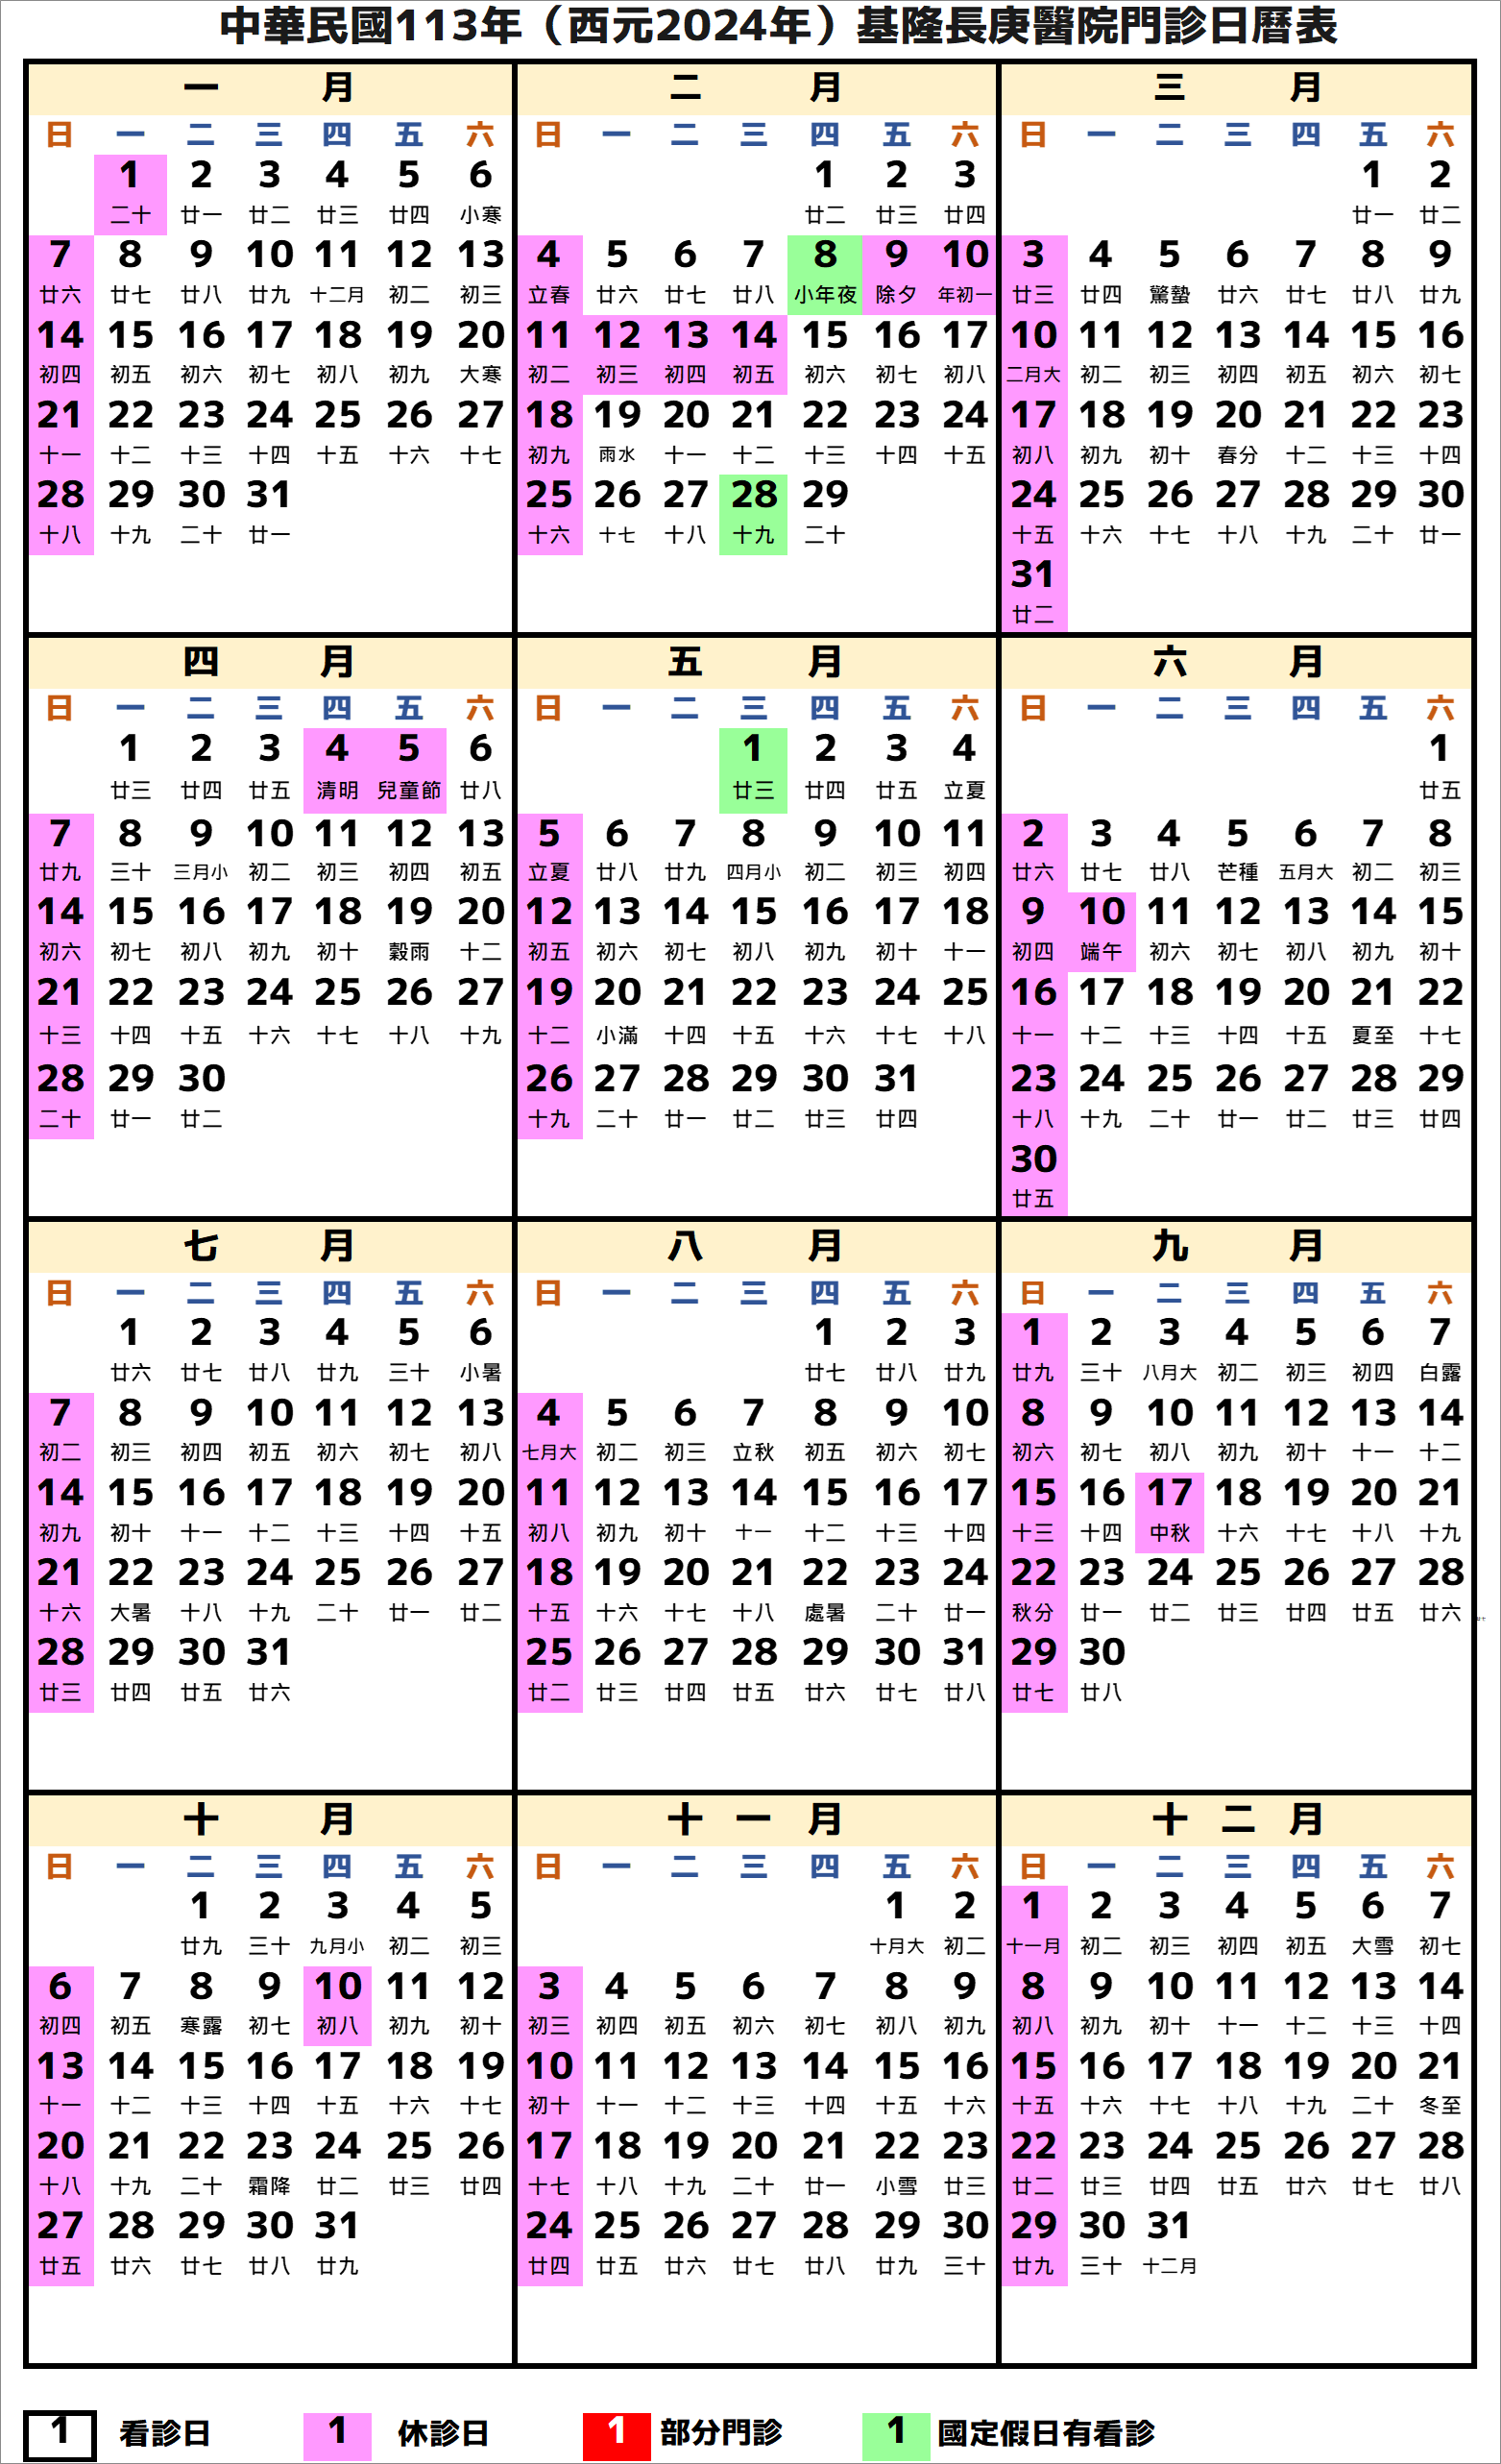 基隆長庚醫院行事曆2024年-民國113年